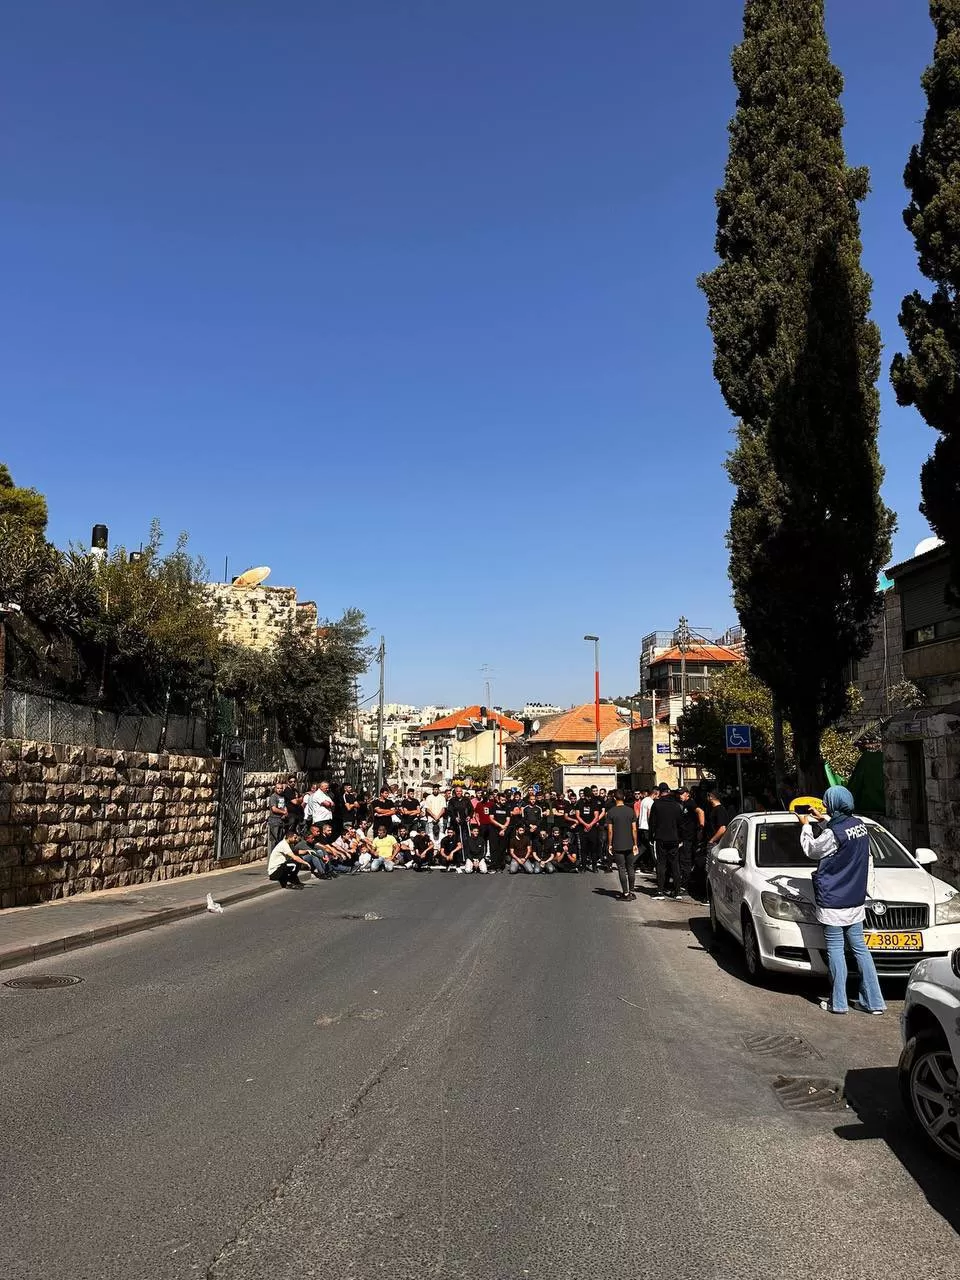 فلسطينيون يؤدون صلاة الظهر في الشارع في حي وادي الجوز بالقدس المحتلة